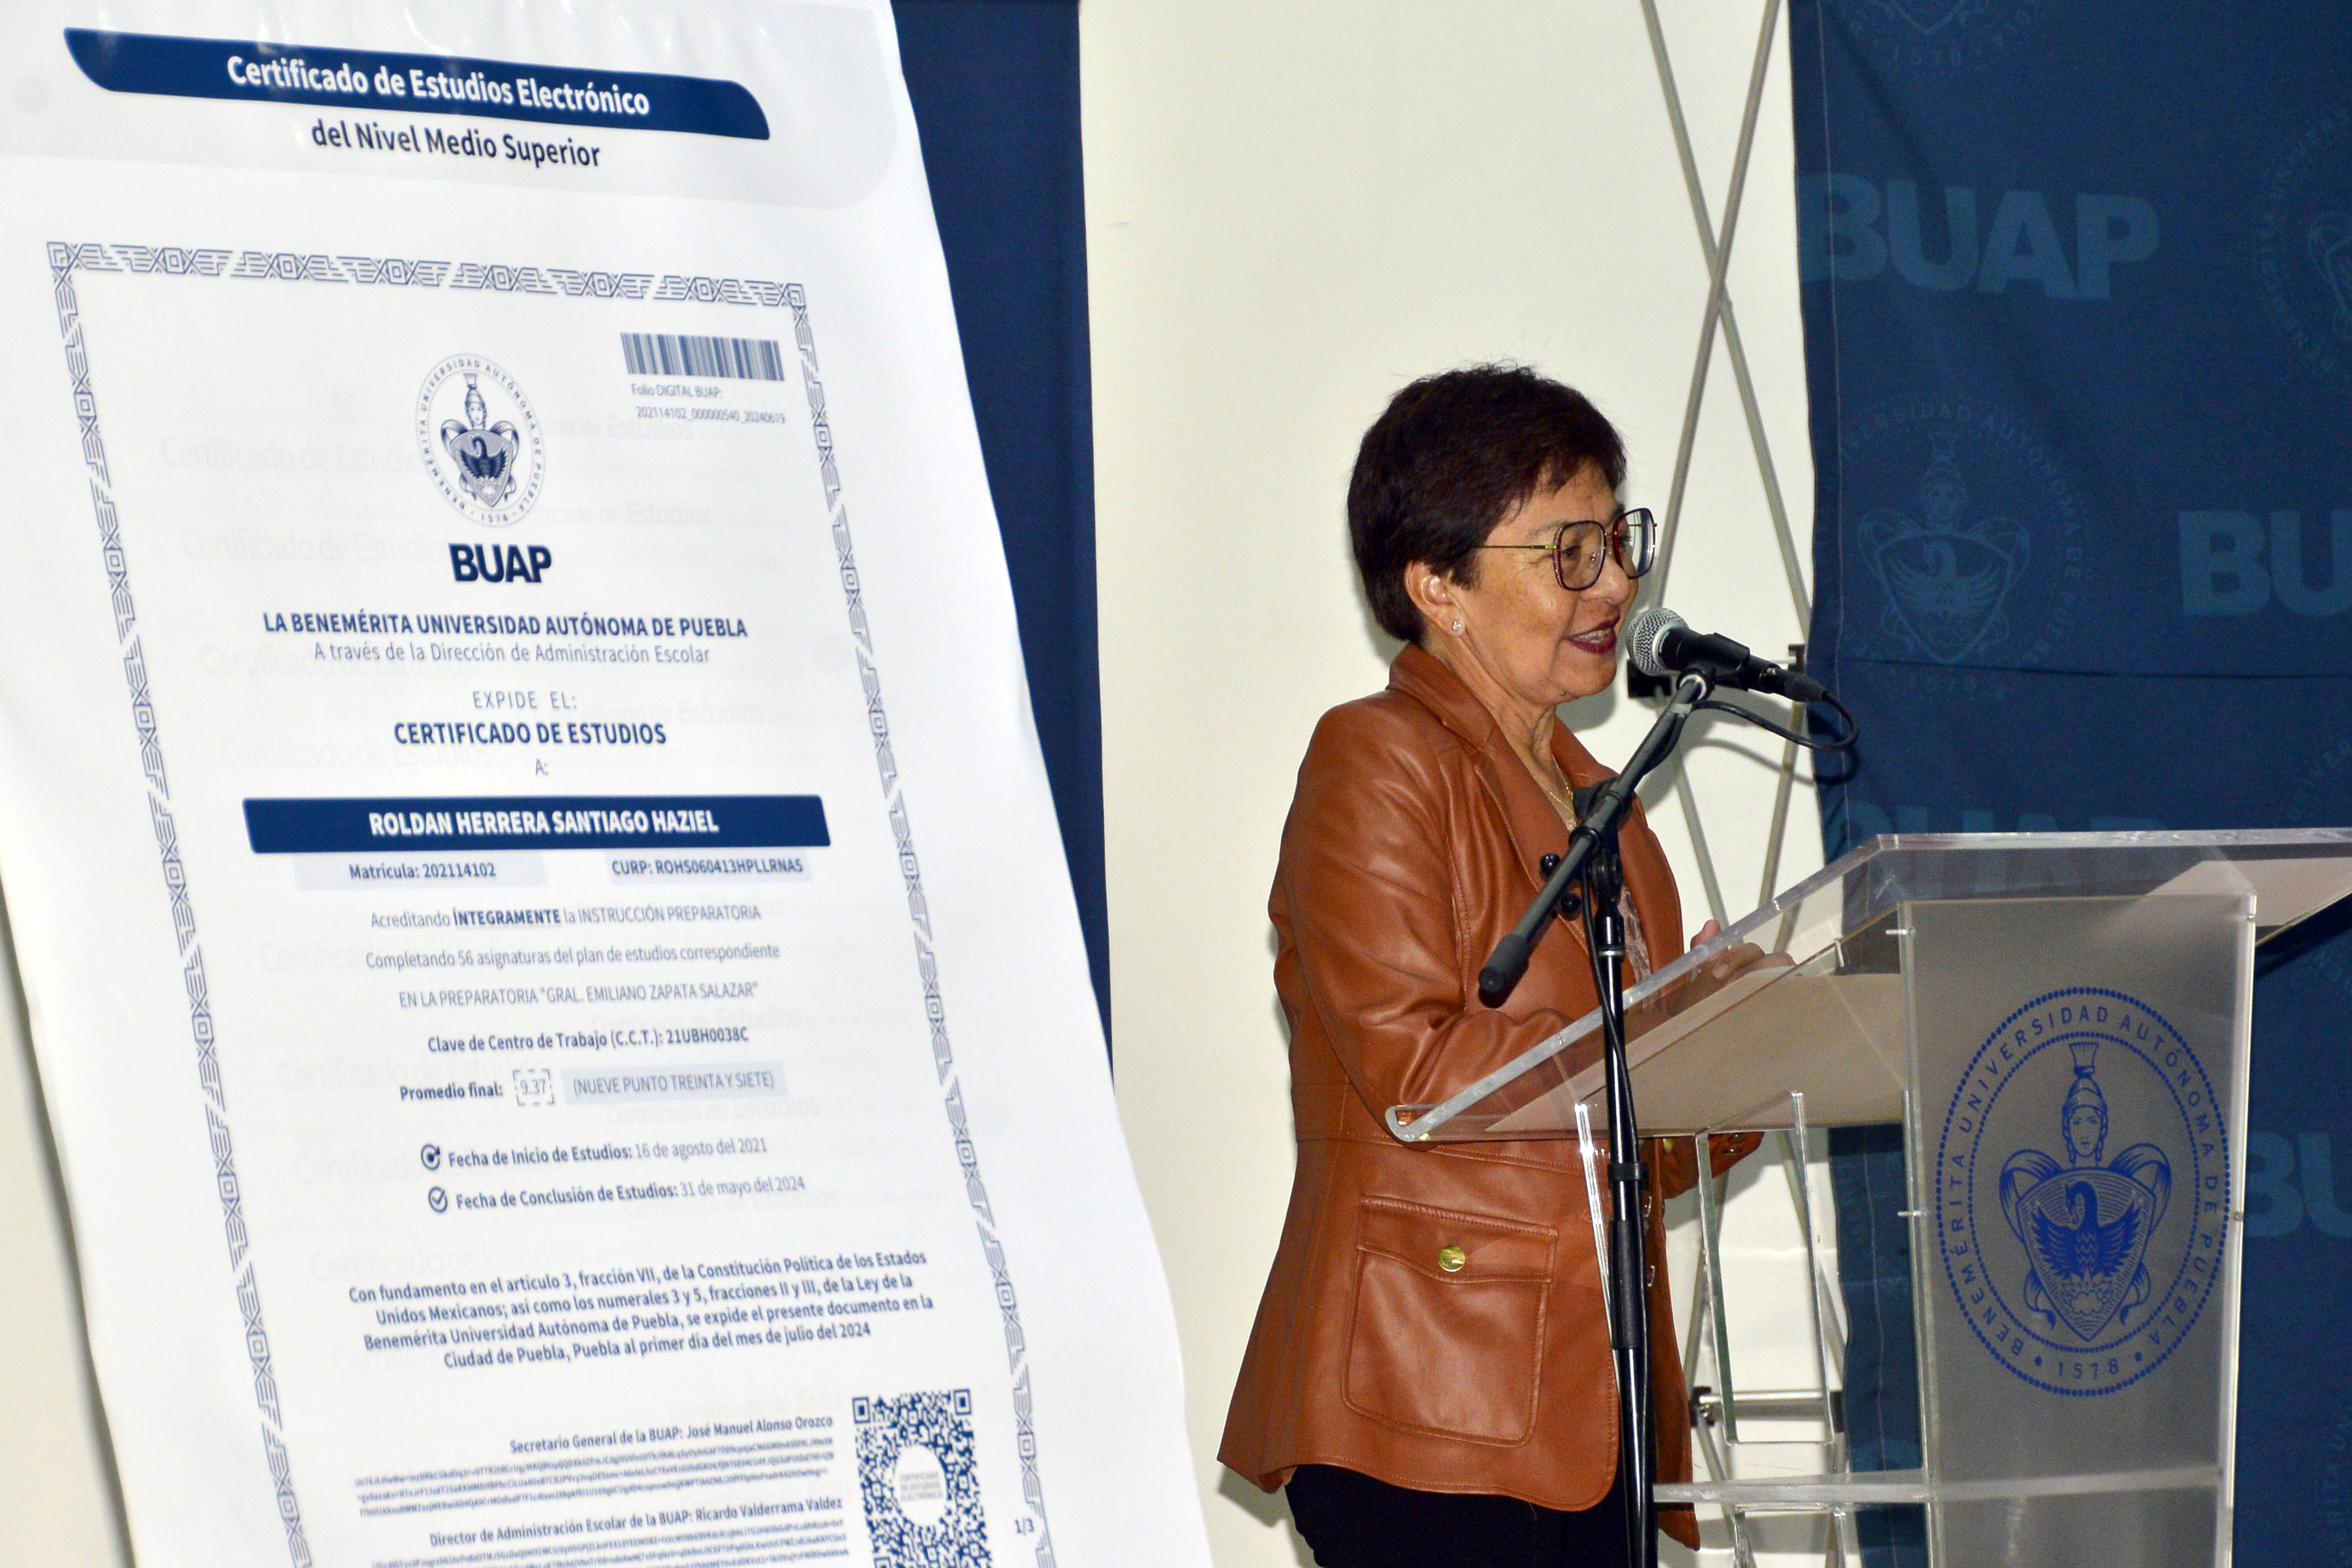 La BUAP presentó el certificado de estudios electrónico del nivel medio superior